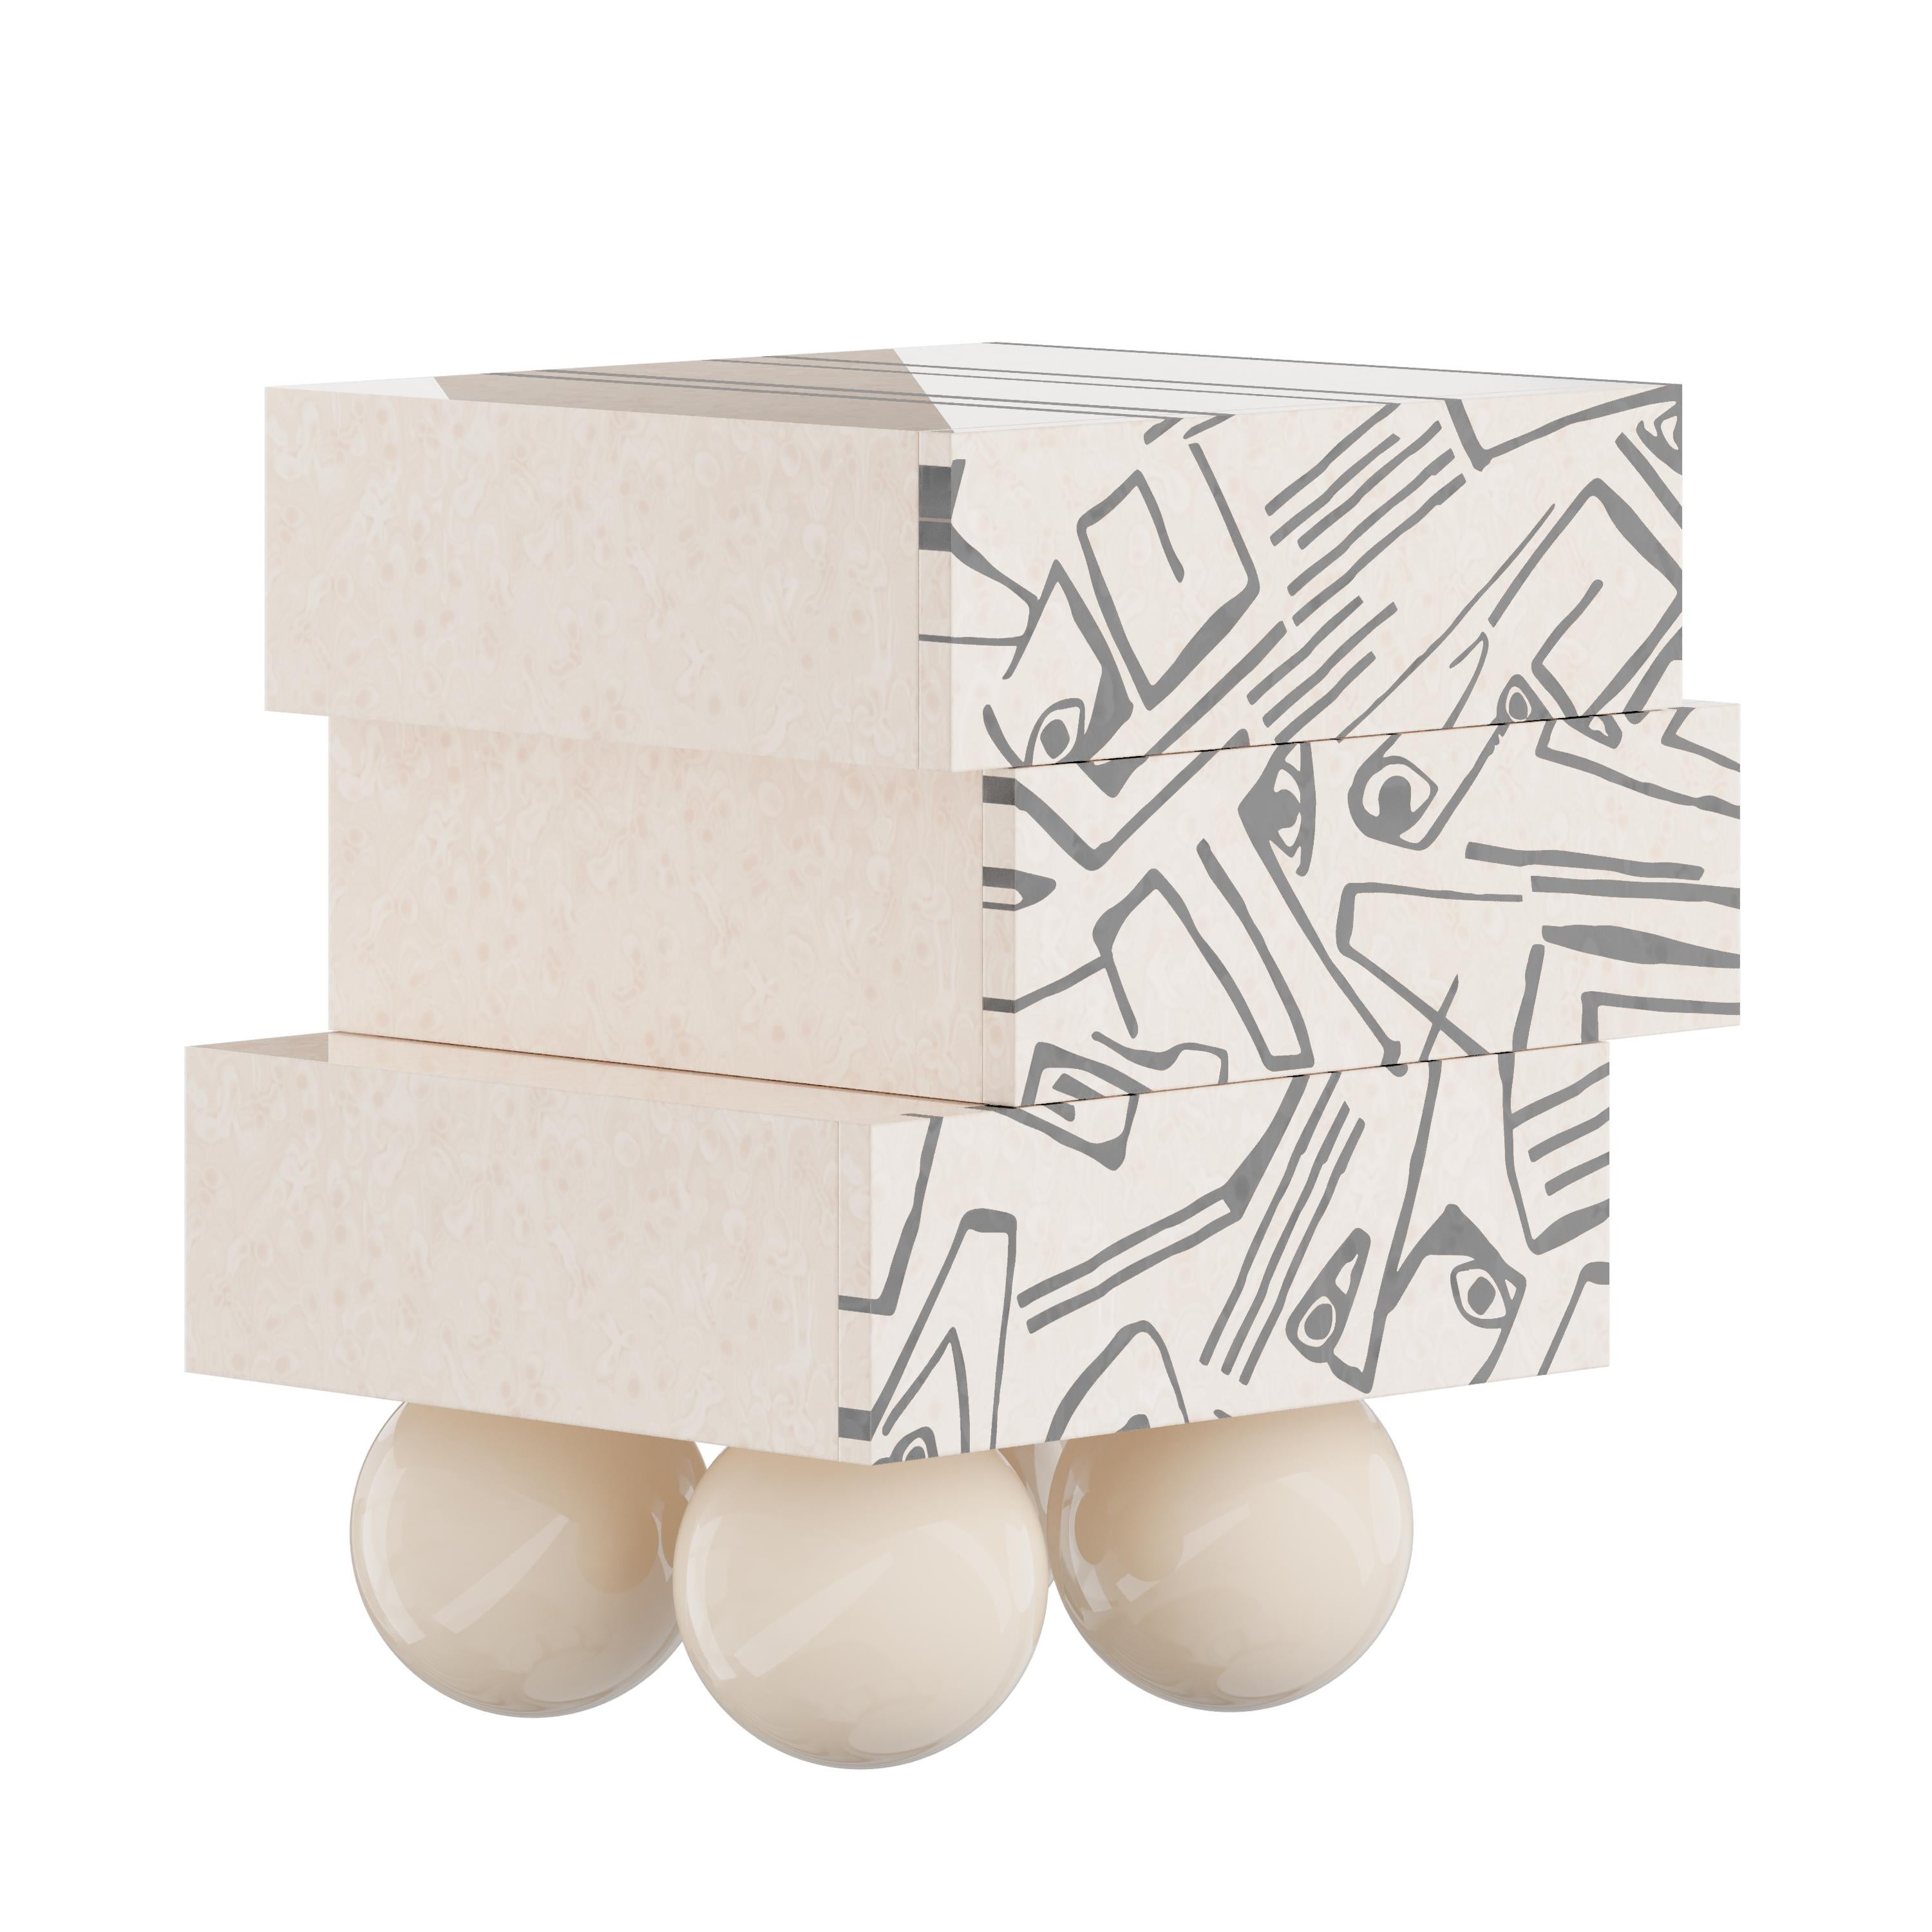 Der Nachttisch Malaga ist der perfekte kubistische Nachttisch für ein minimalistisches Schlafzimmerprojekt. Seine dynamische Silhouette besteht aus drei Schubladen, die auf vier Beinen aus Holzkugeln ruhen. Das auffällige geometrische Design dieses